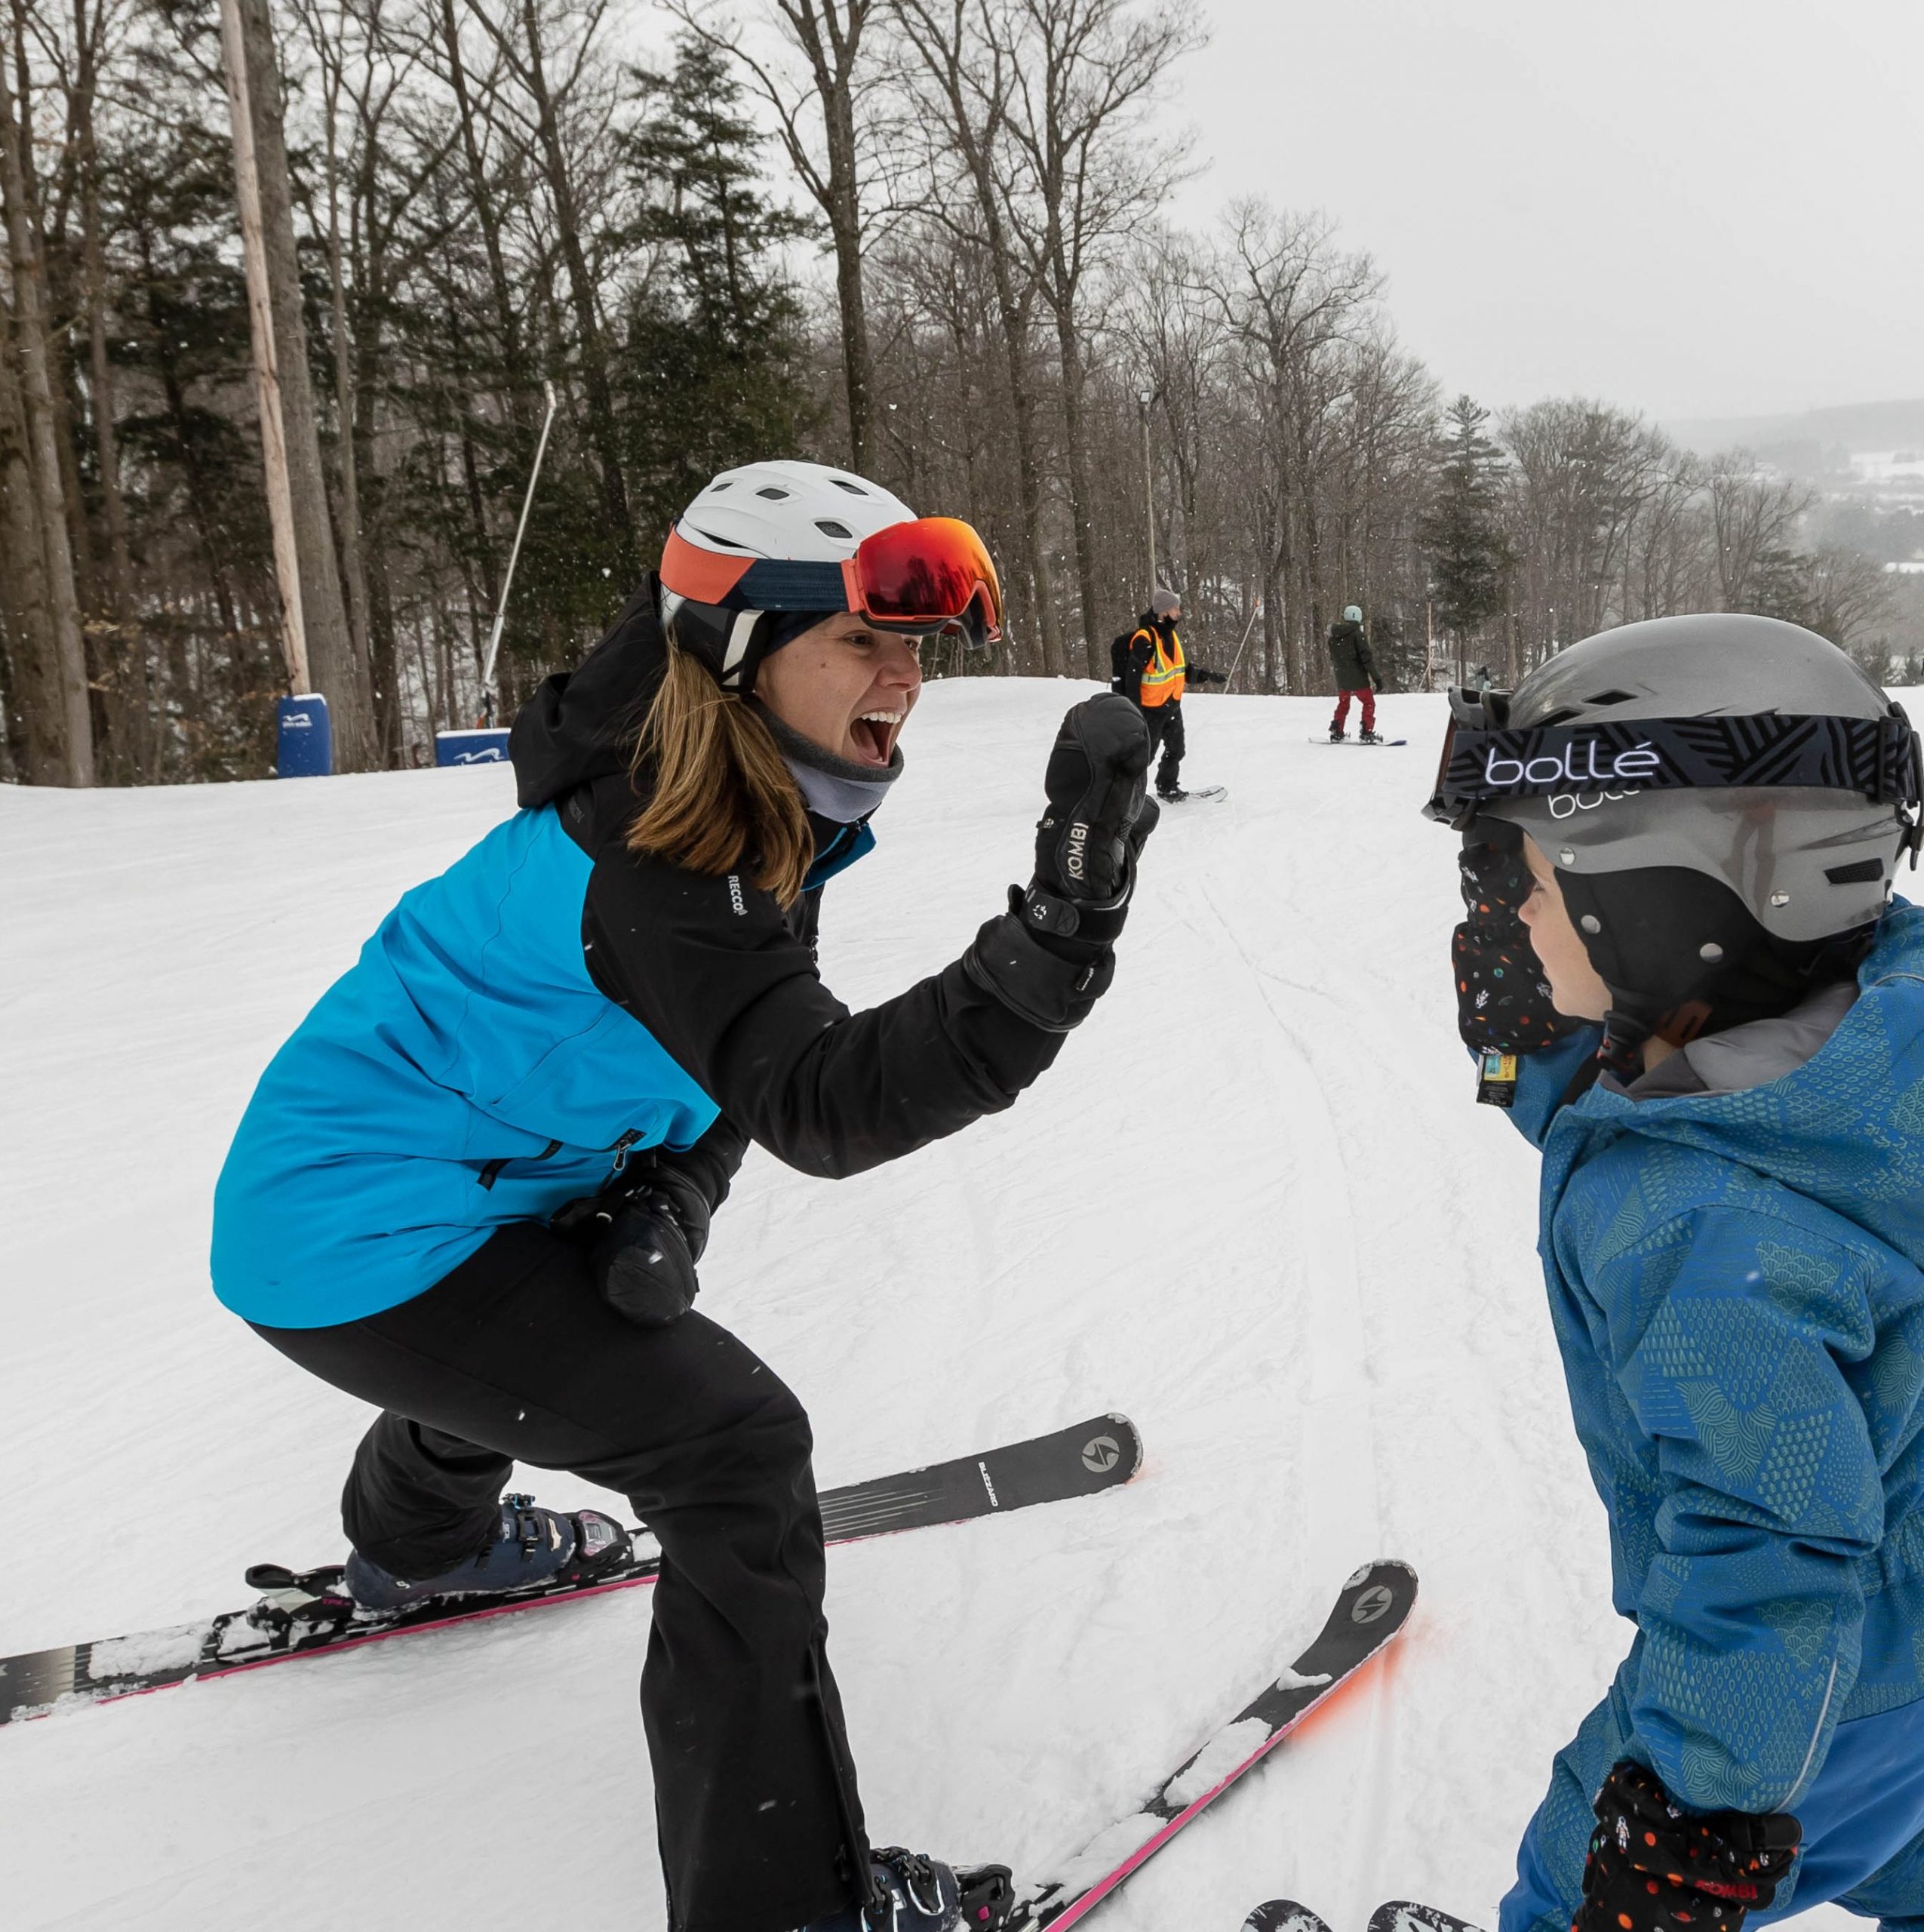 une jeune fille sur des skis donne un high-five à un autre jeune enfant